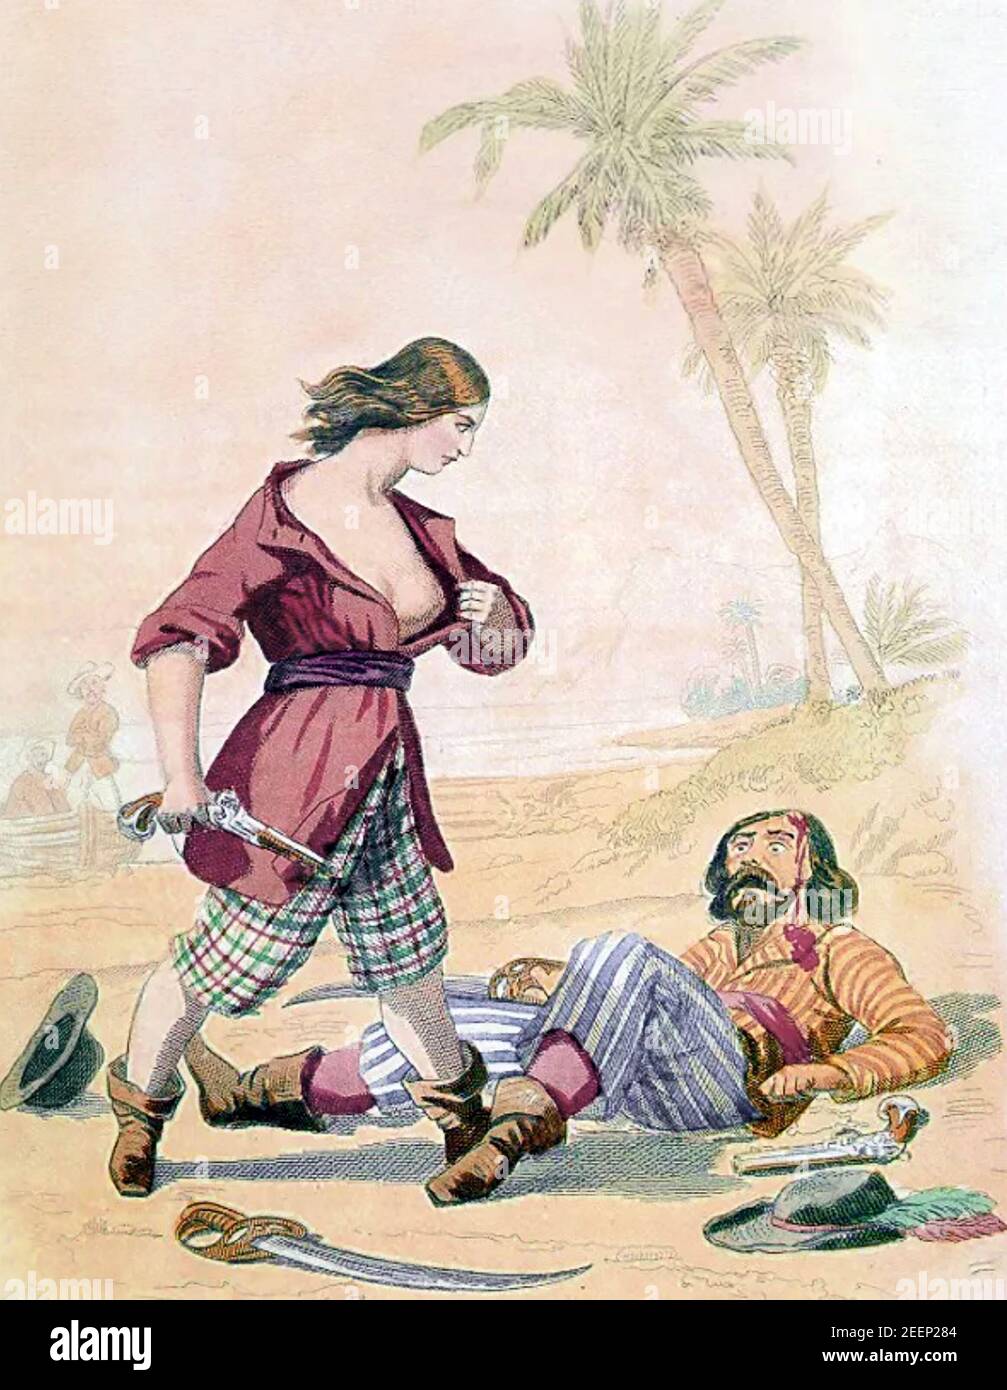 MARY LAS (1685-1721) englische Piratin und Freundin von Anne Bonny, die sich als Frau offenbarte, nachdem sie einen anderen Piraten in einer Illustration von 1846 verletzt hatte Stockfoto